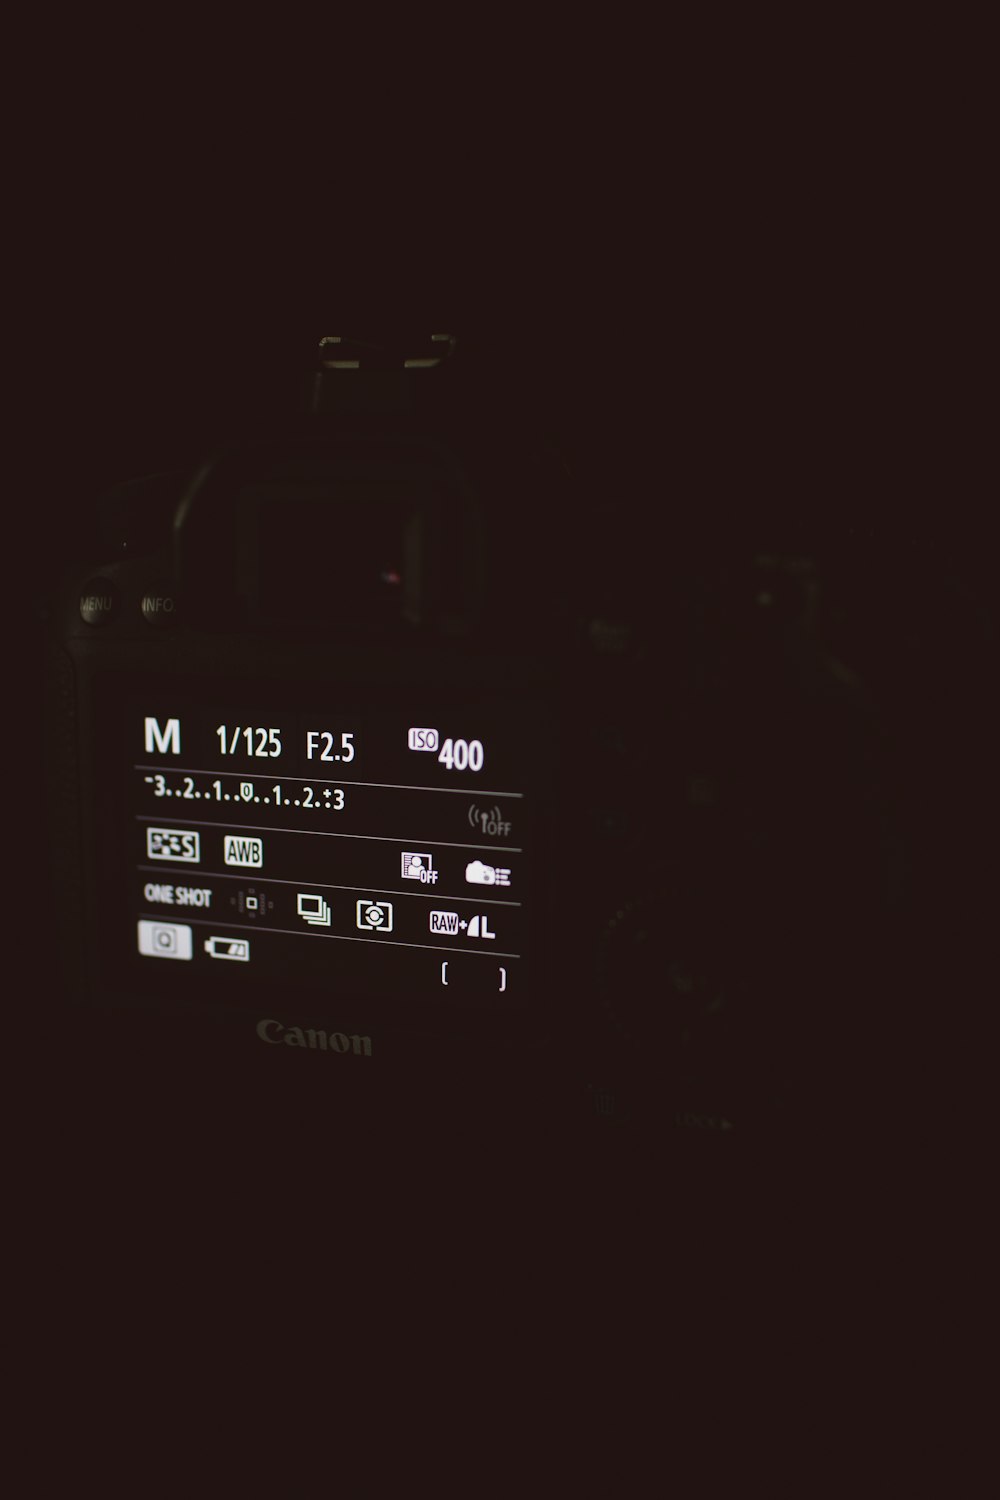 켜진 검은색 Canon DSLR 카메라